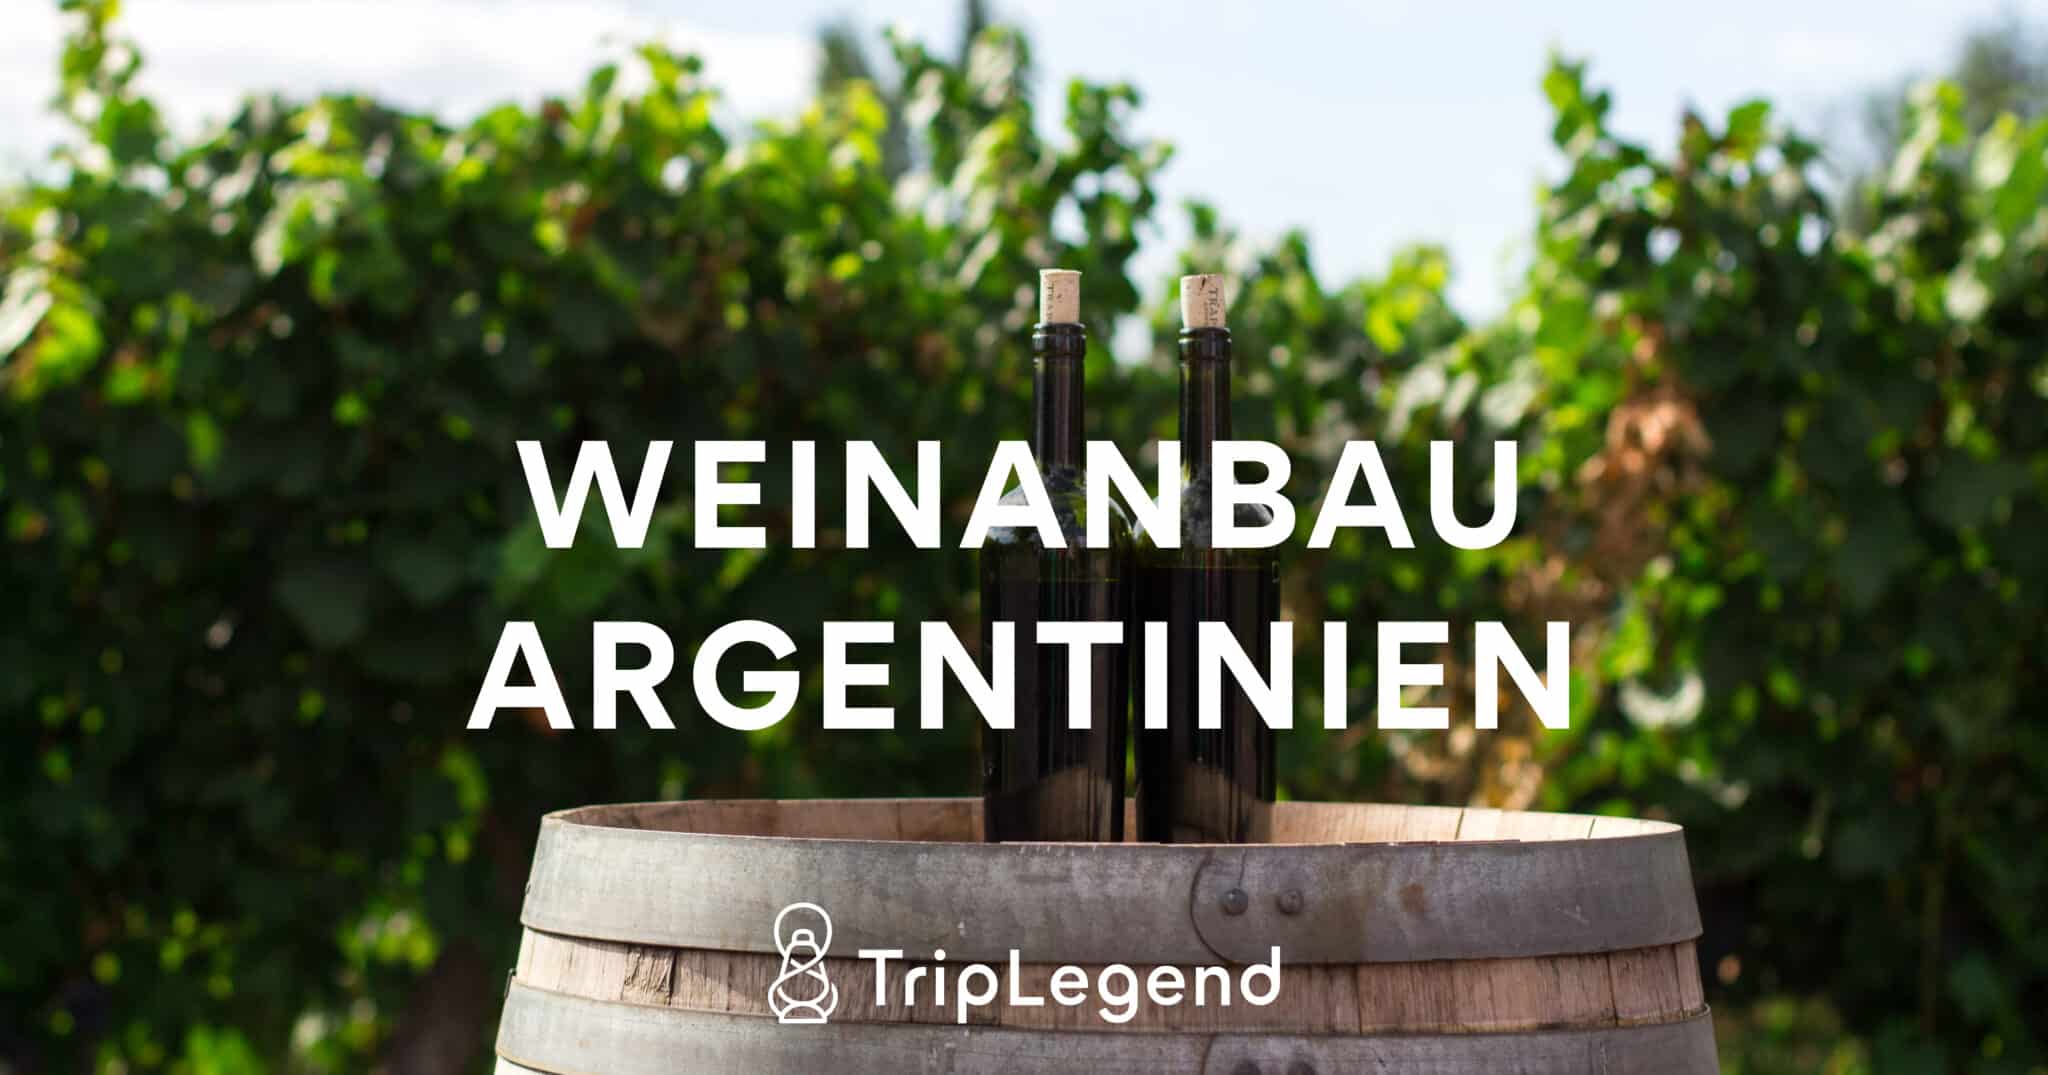 Weinanbau Argentinien Scaled